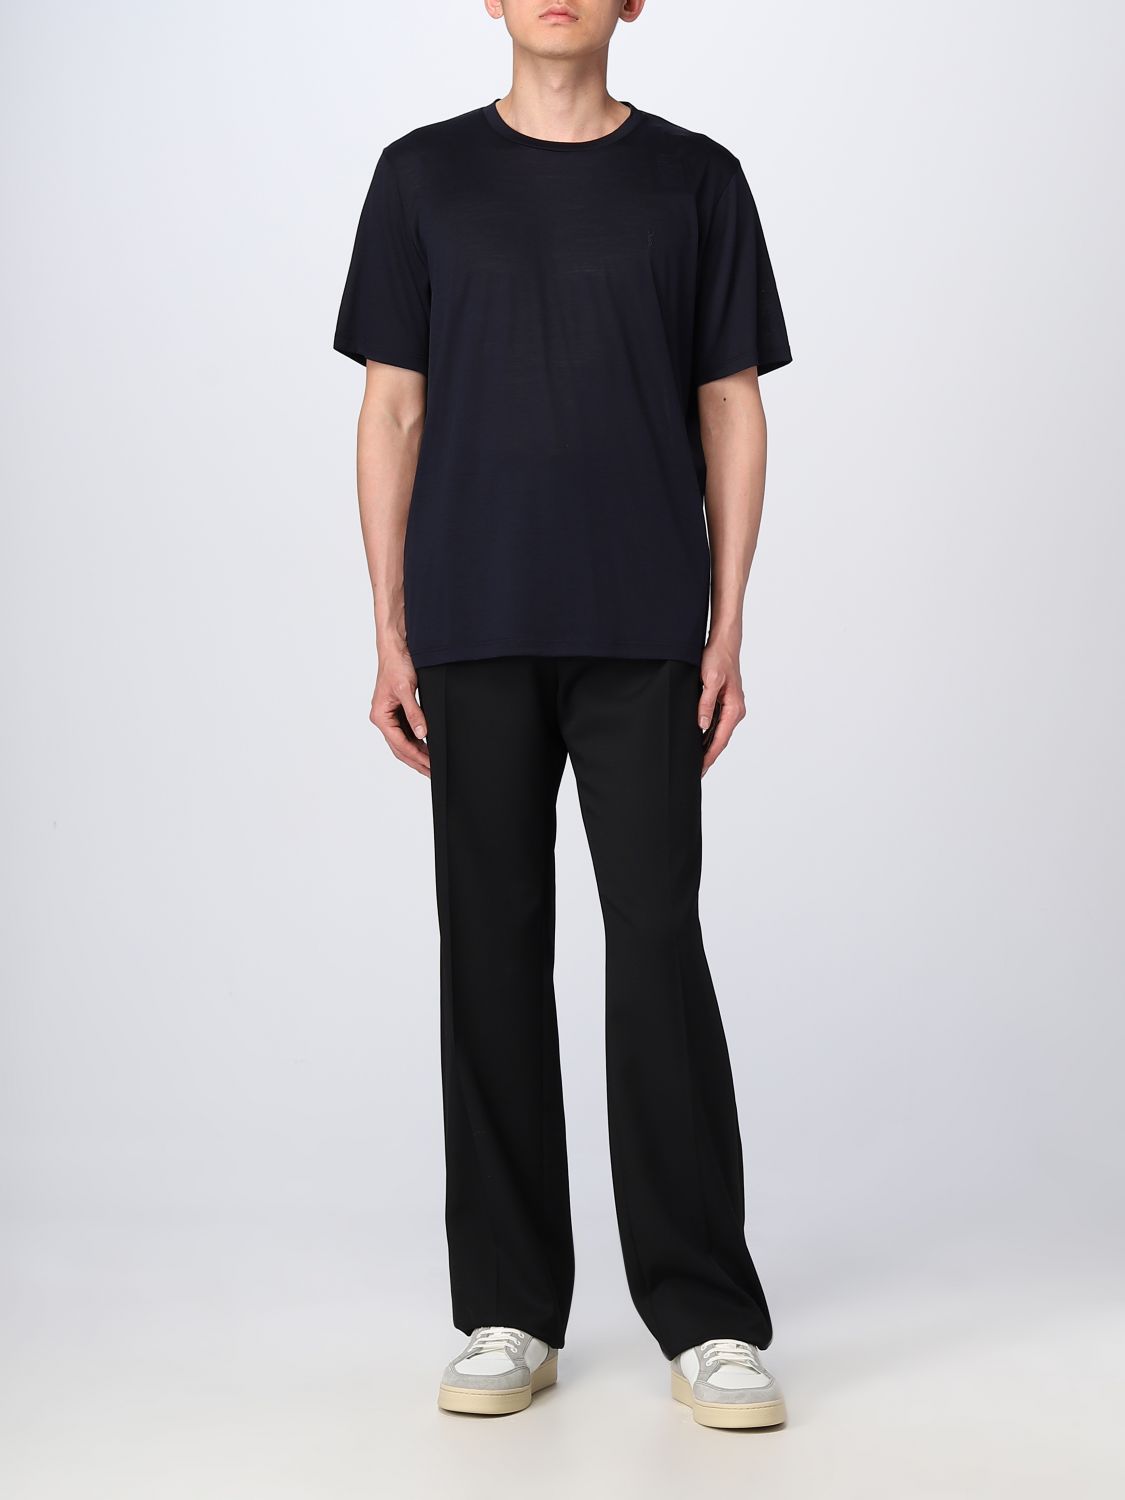 SAINT LAURENT: wool pants - Black | Saint Laurent pants 737998Y512W ...